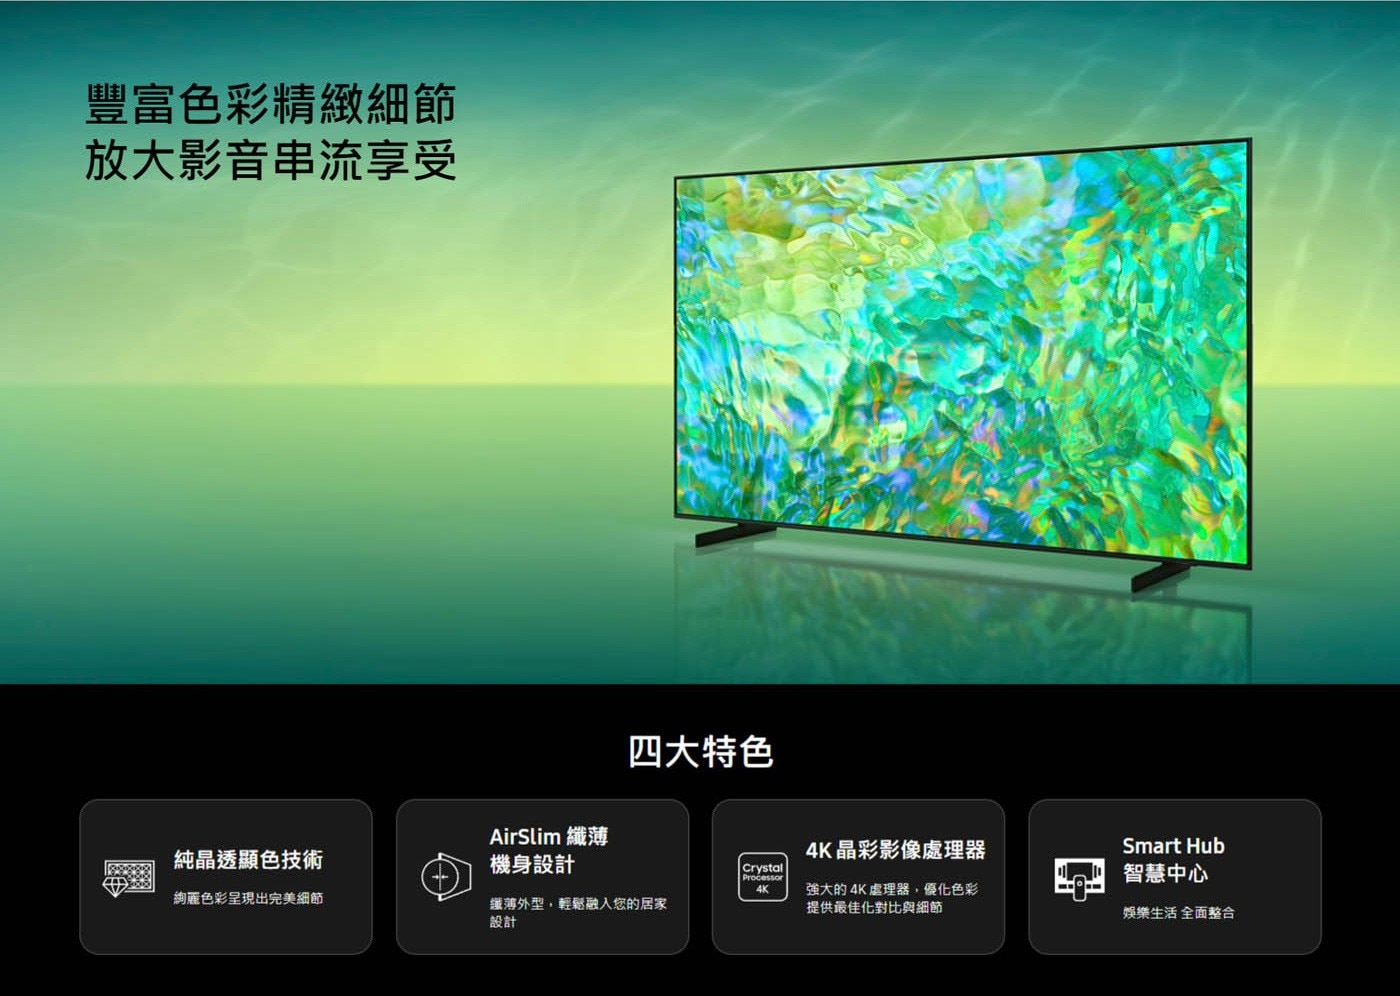 Samsung 75吋 4K UHD 電視 UA75CU8000XXZW豐富色彩精緻細節放大影音串流享受